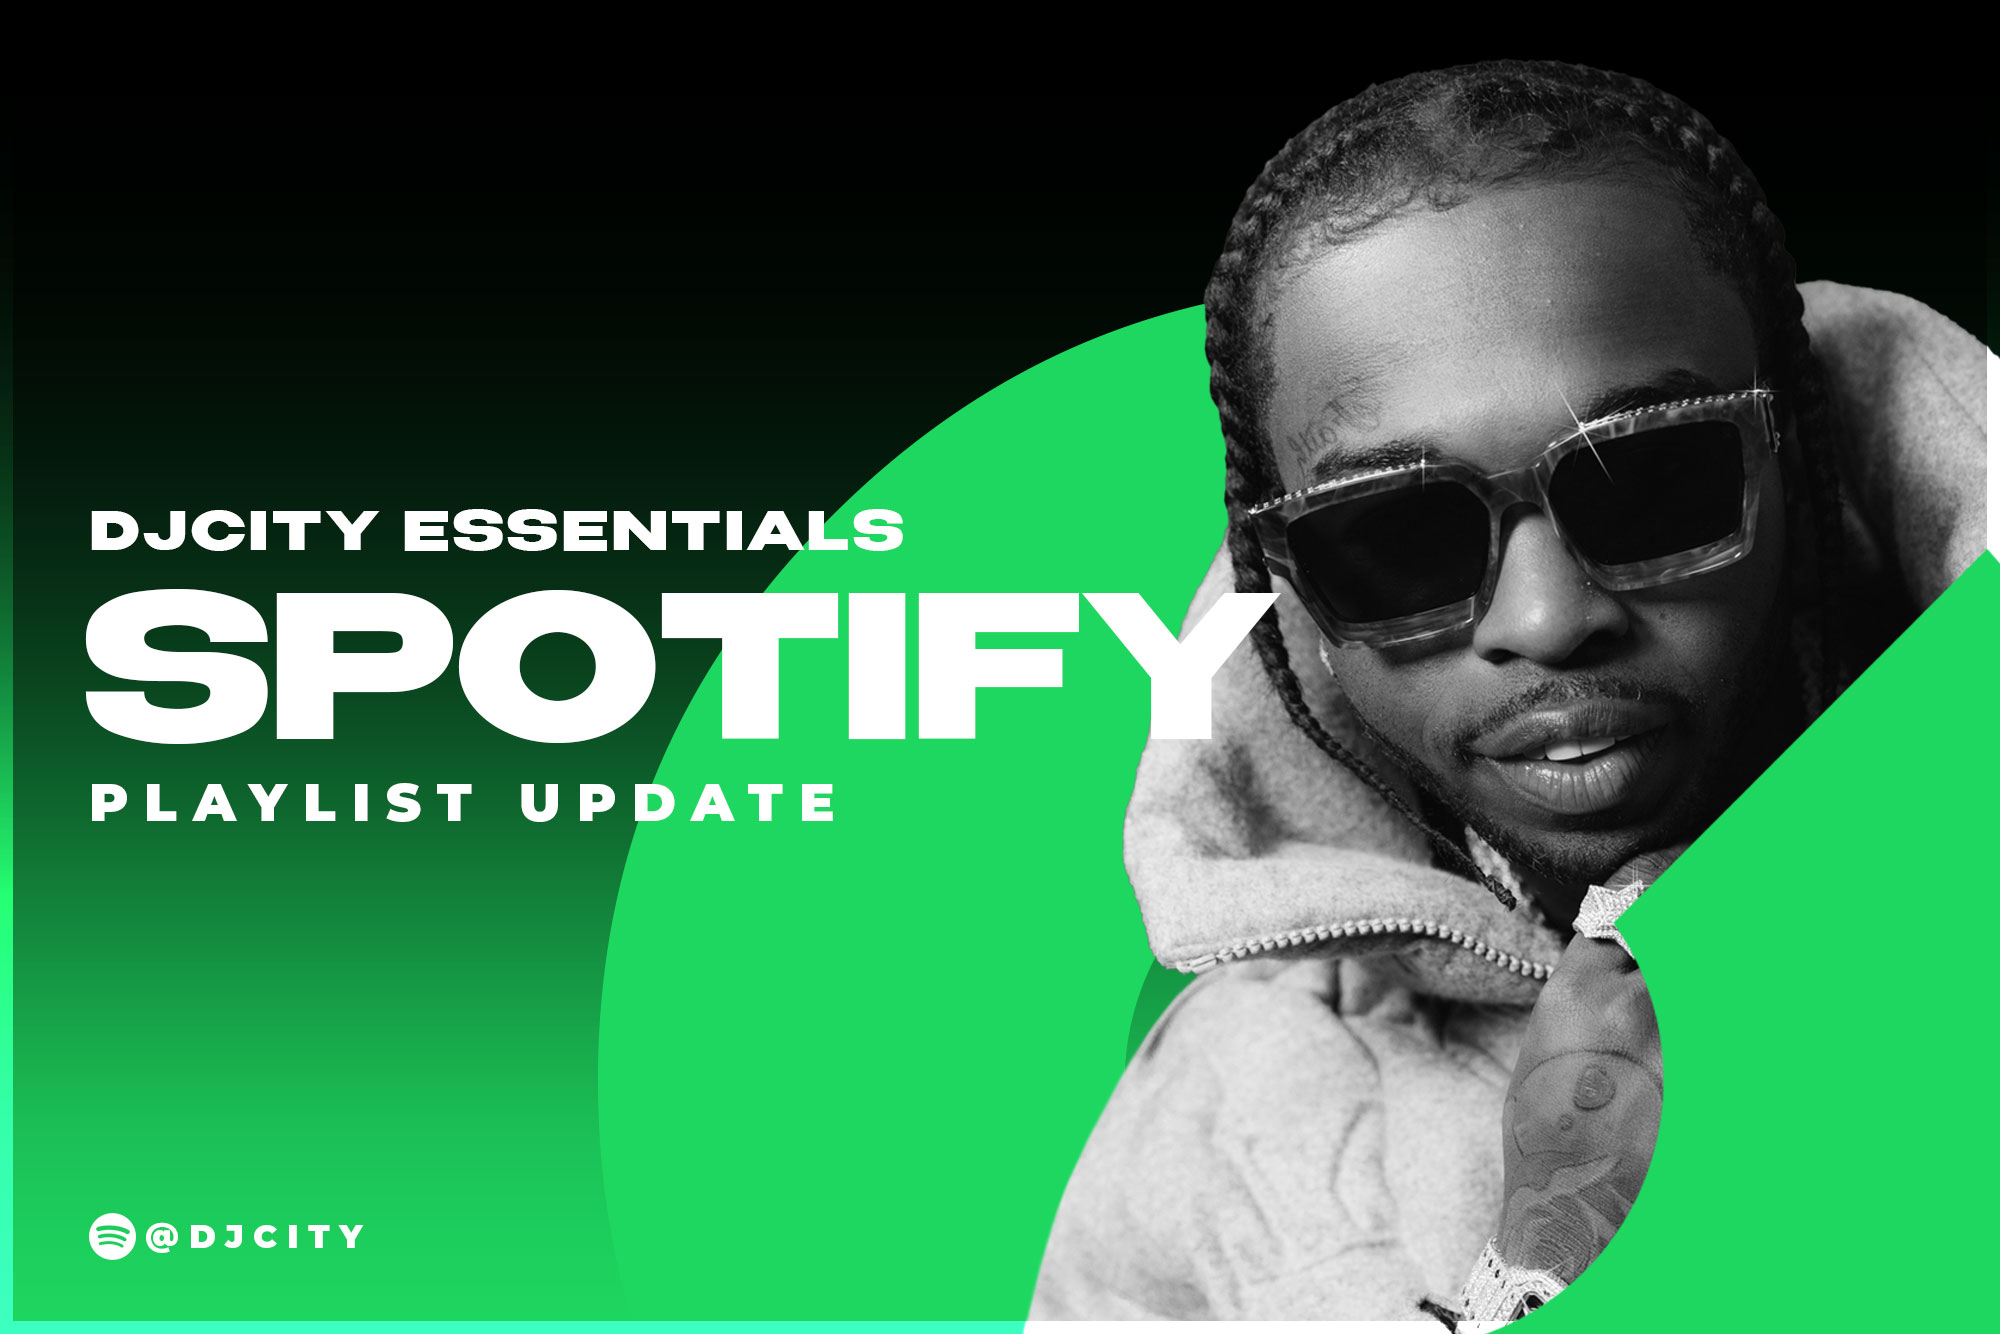 DJcity’s Spotify Playlist Update: Mar. 2